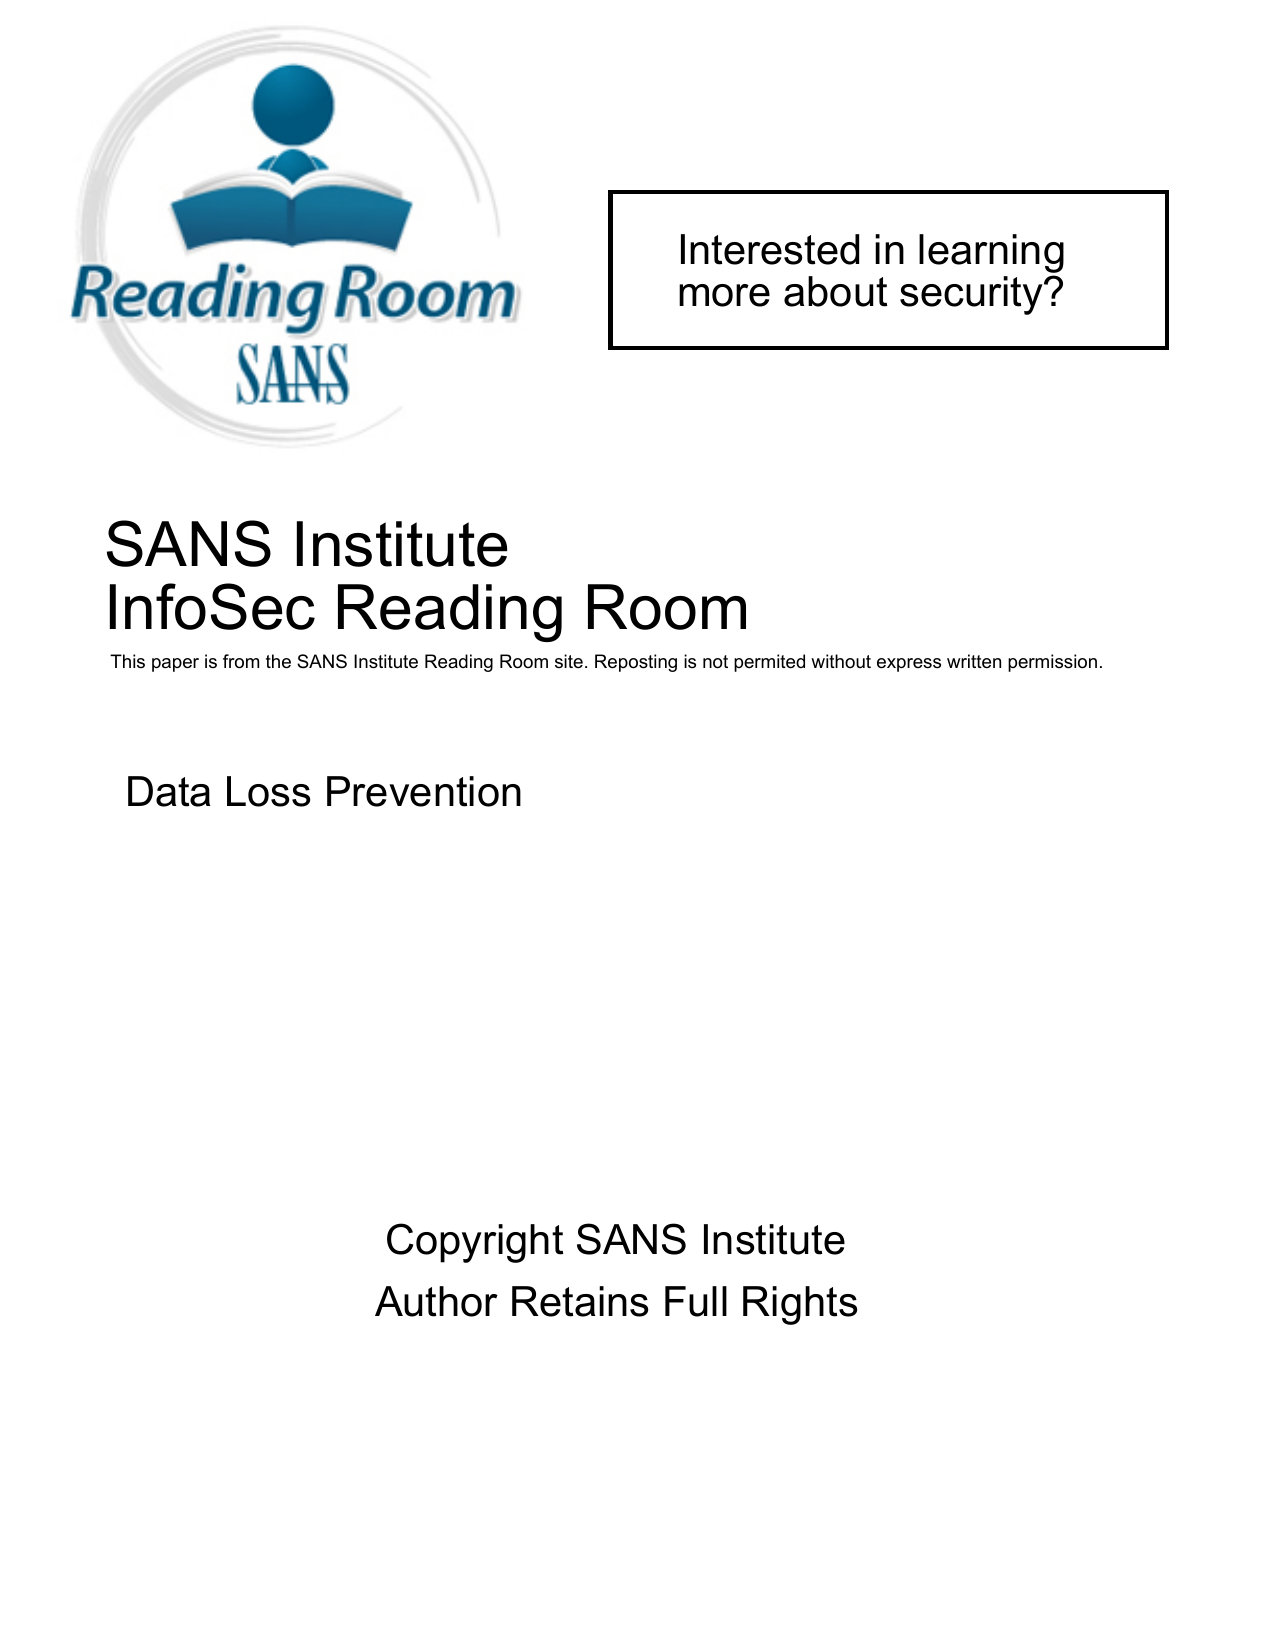 Sans Institute Data Loss Prevention